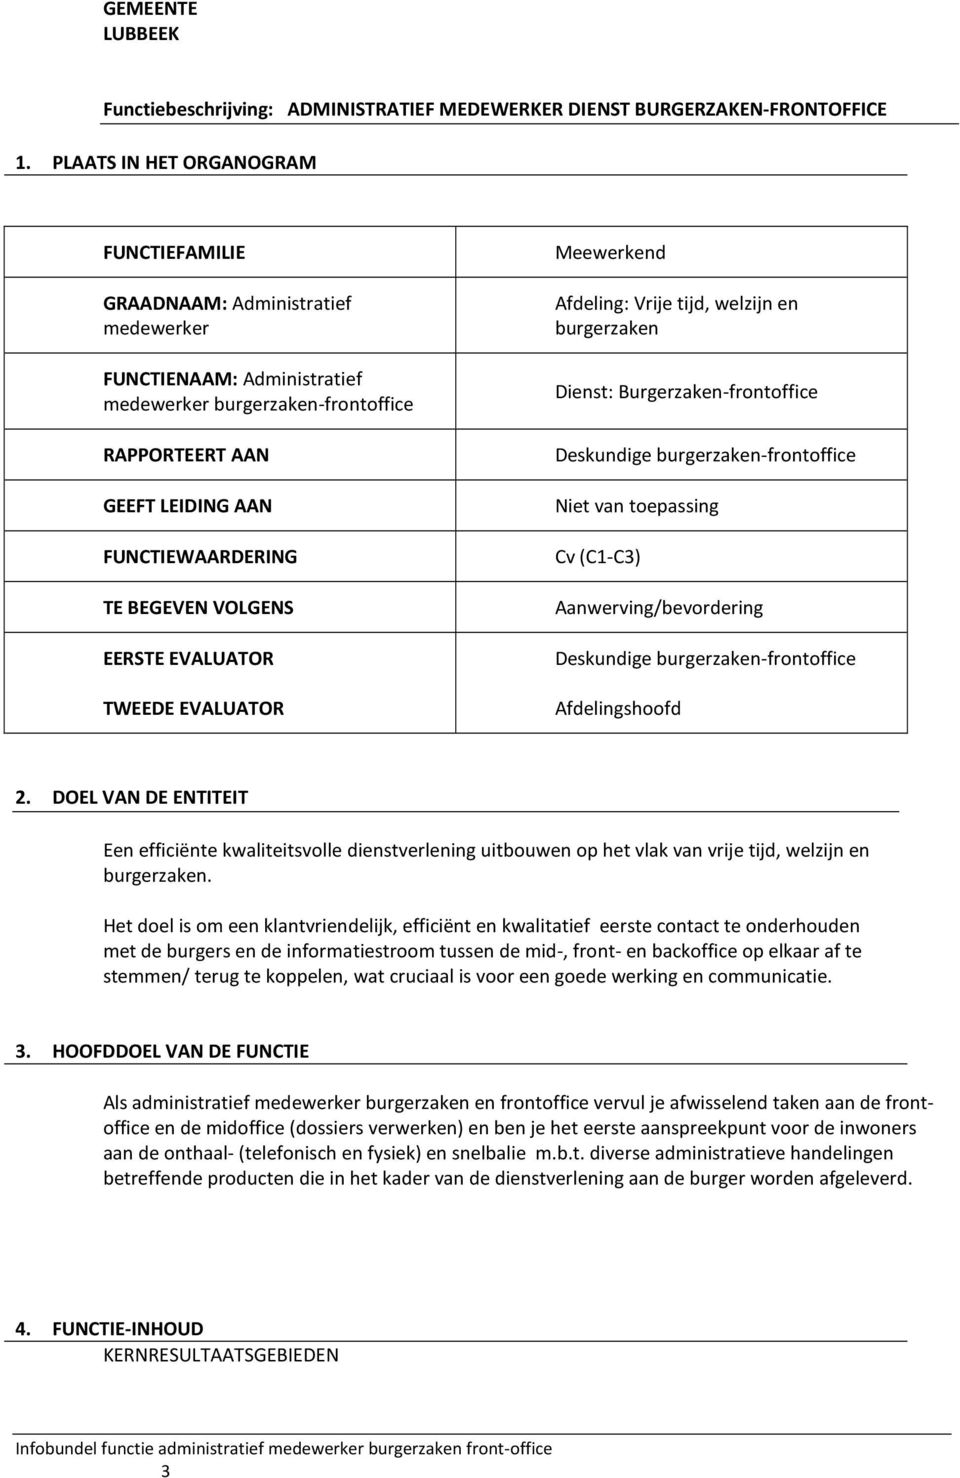 Infobundel Functie Administratief Medewerker Burgerzaken Front Office Vacaturebericht Pdf Gratis Download